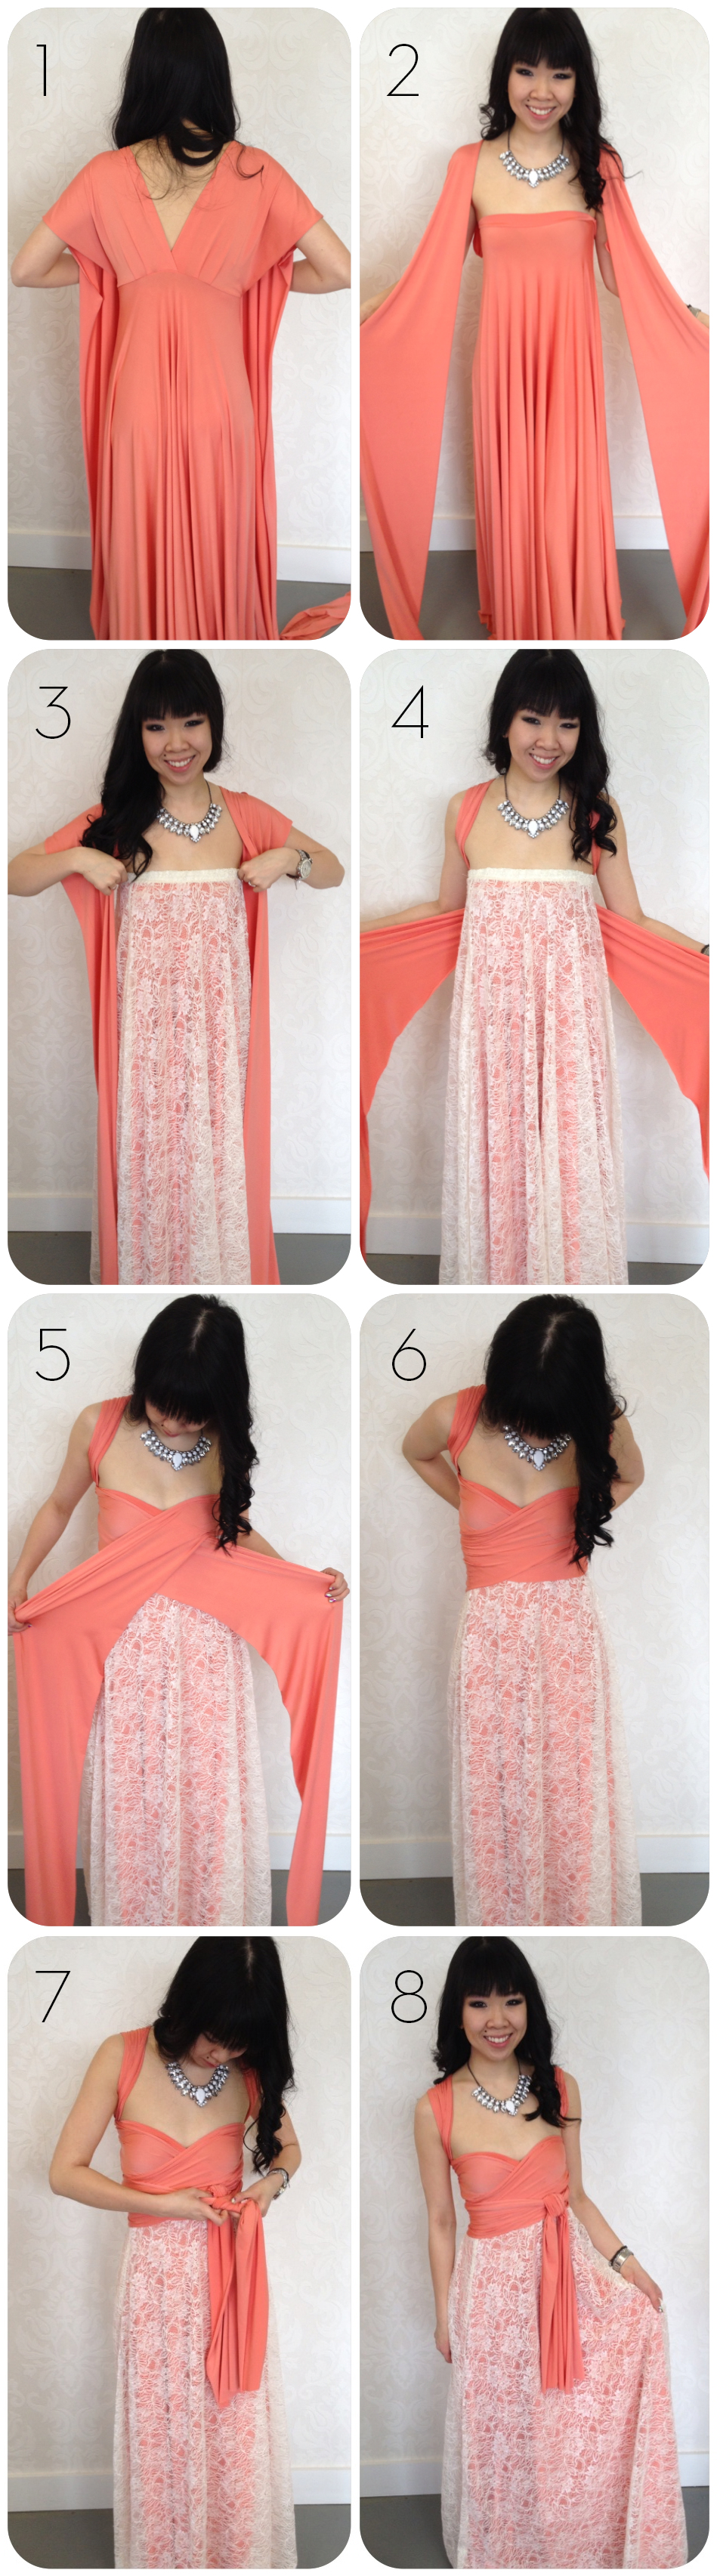 peachpinkcoral-lace dress